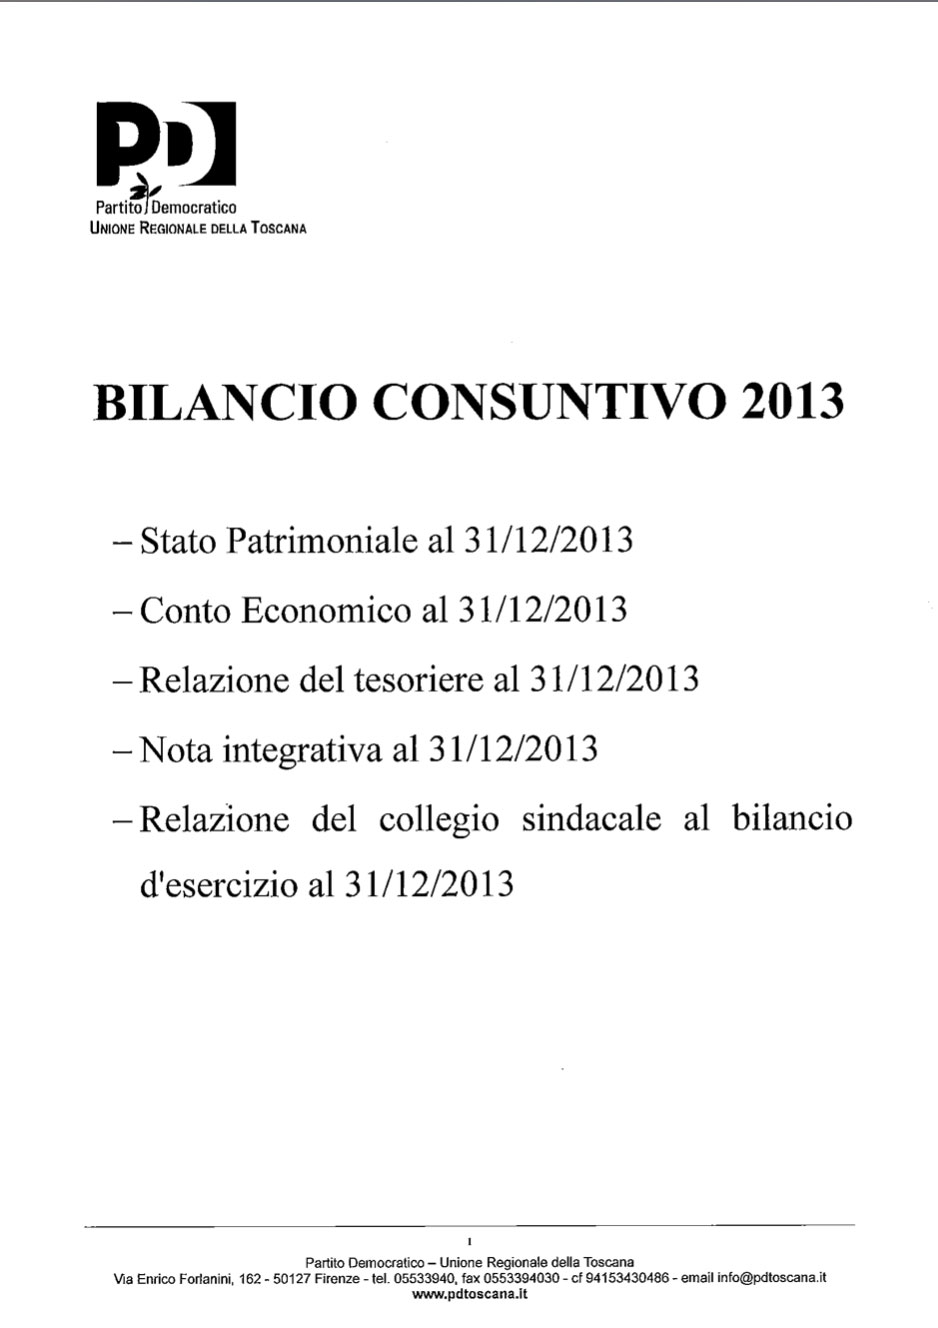 Scarica il Bilancio consuntivo 2013, relazione e nota integrativa del tesoriere, collegio sindacale 